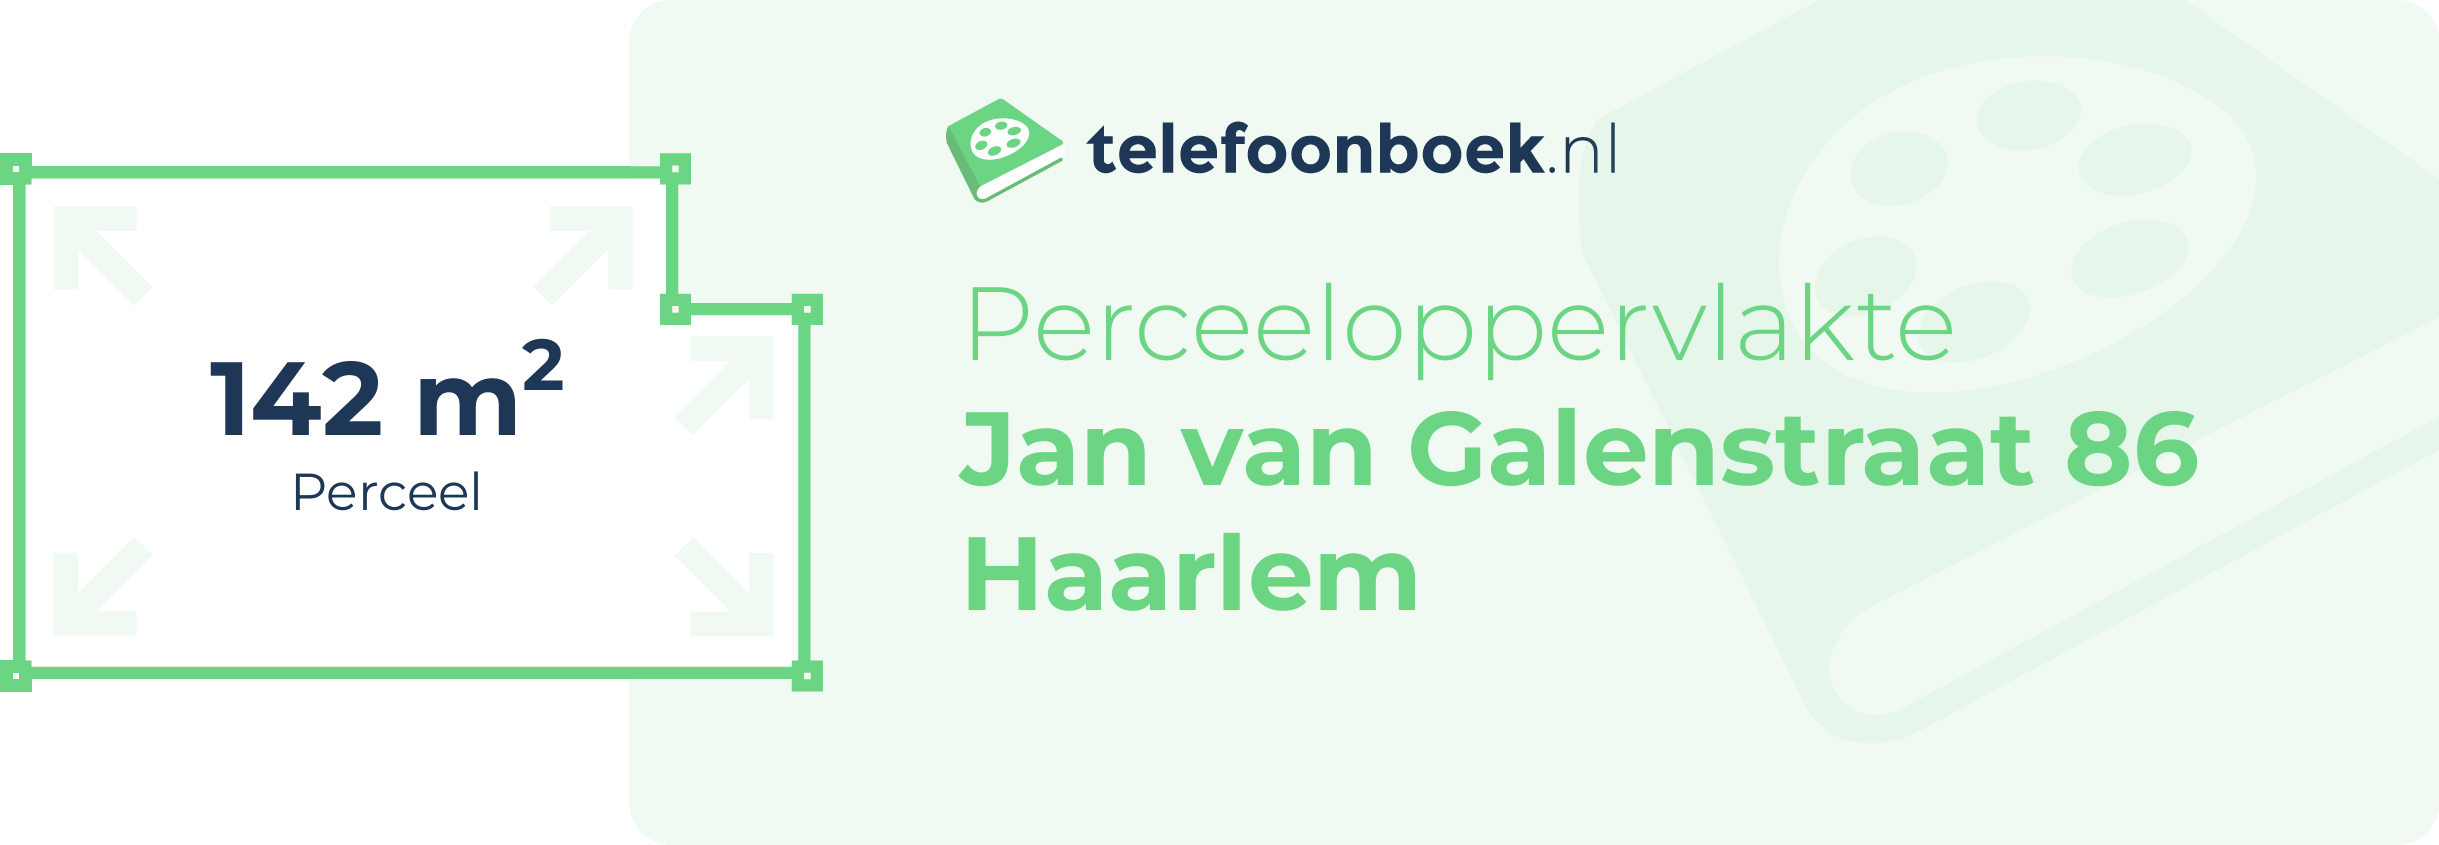 Perceeloppervlakte Jan Van Galenstraat 86 Haarlem